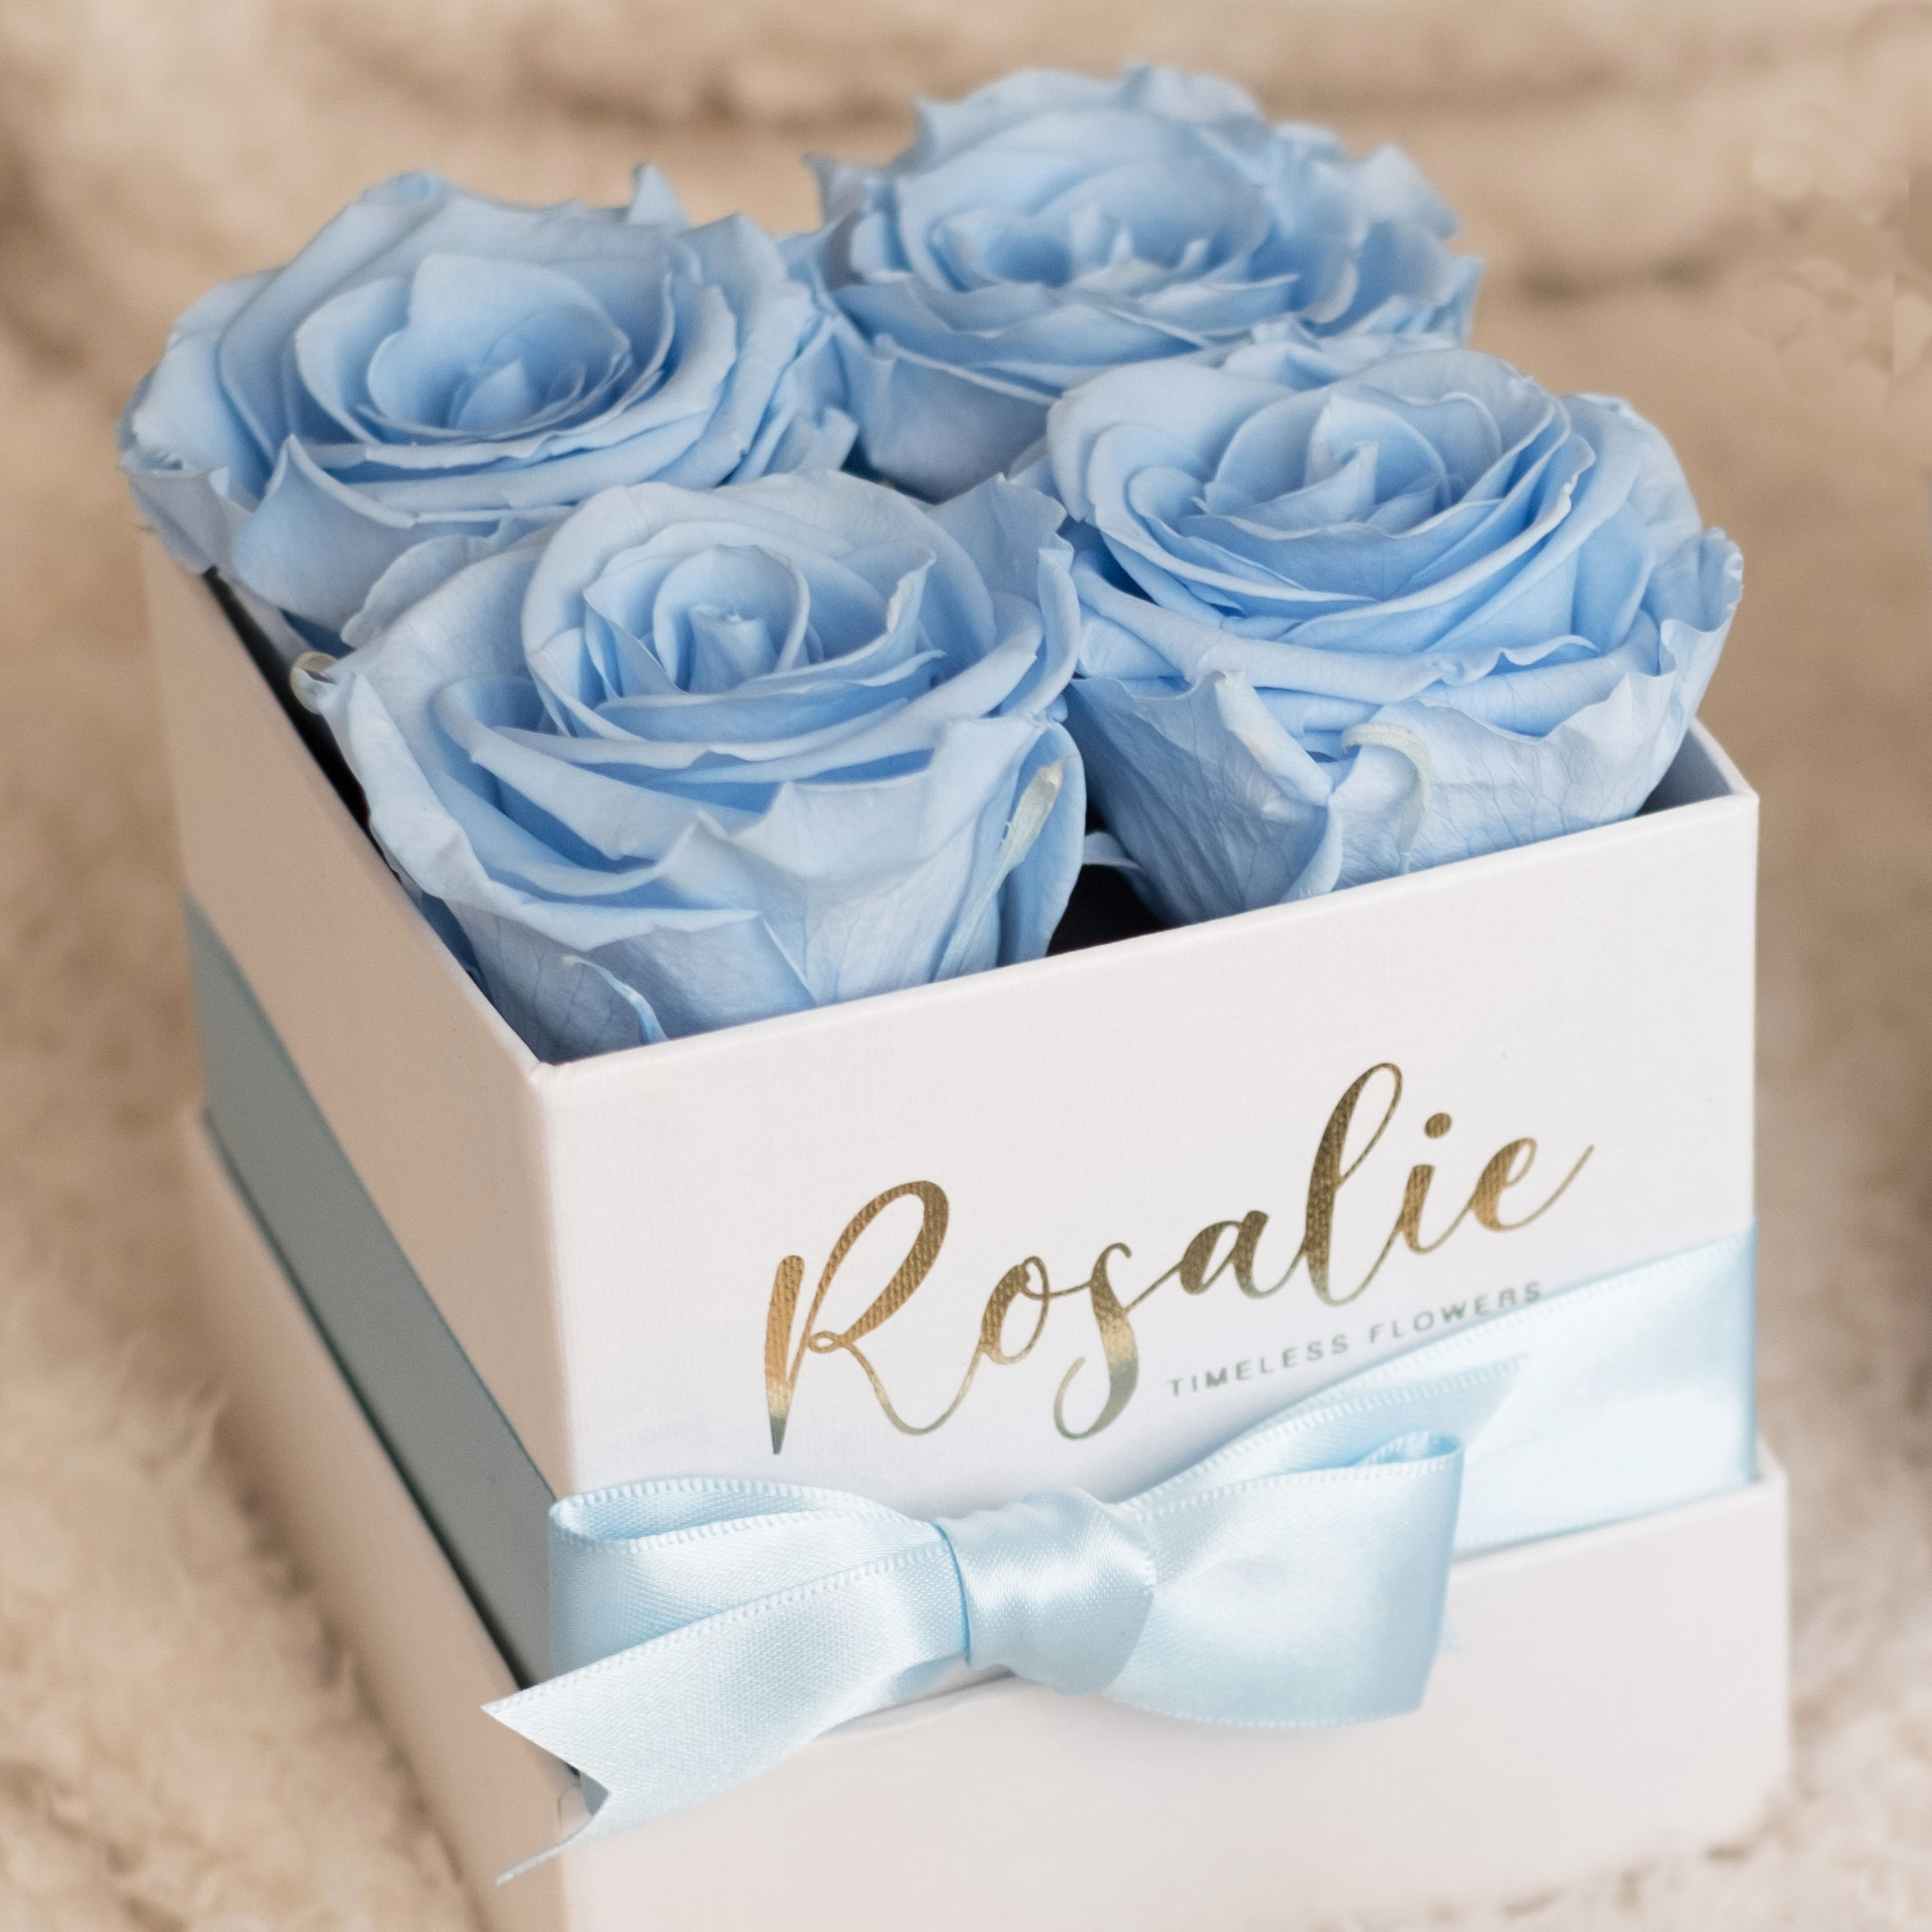 scatola bianca quadrata con 4 rose stabilizzate azzurre e nastro azzurro, poggiata su coperta bianca.